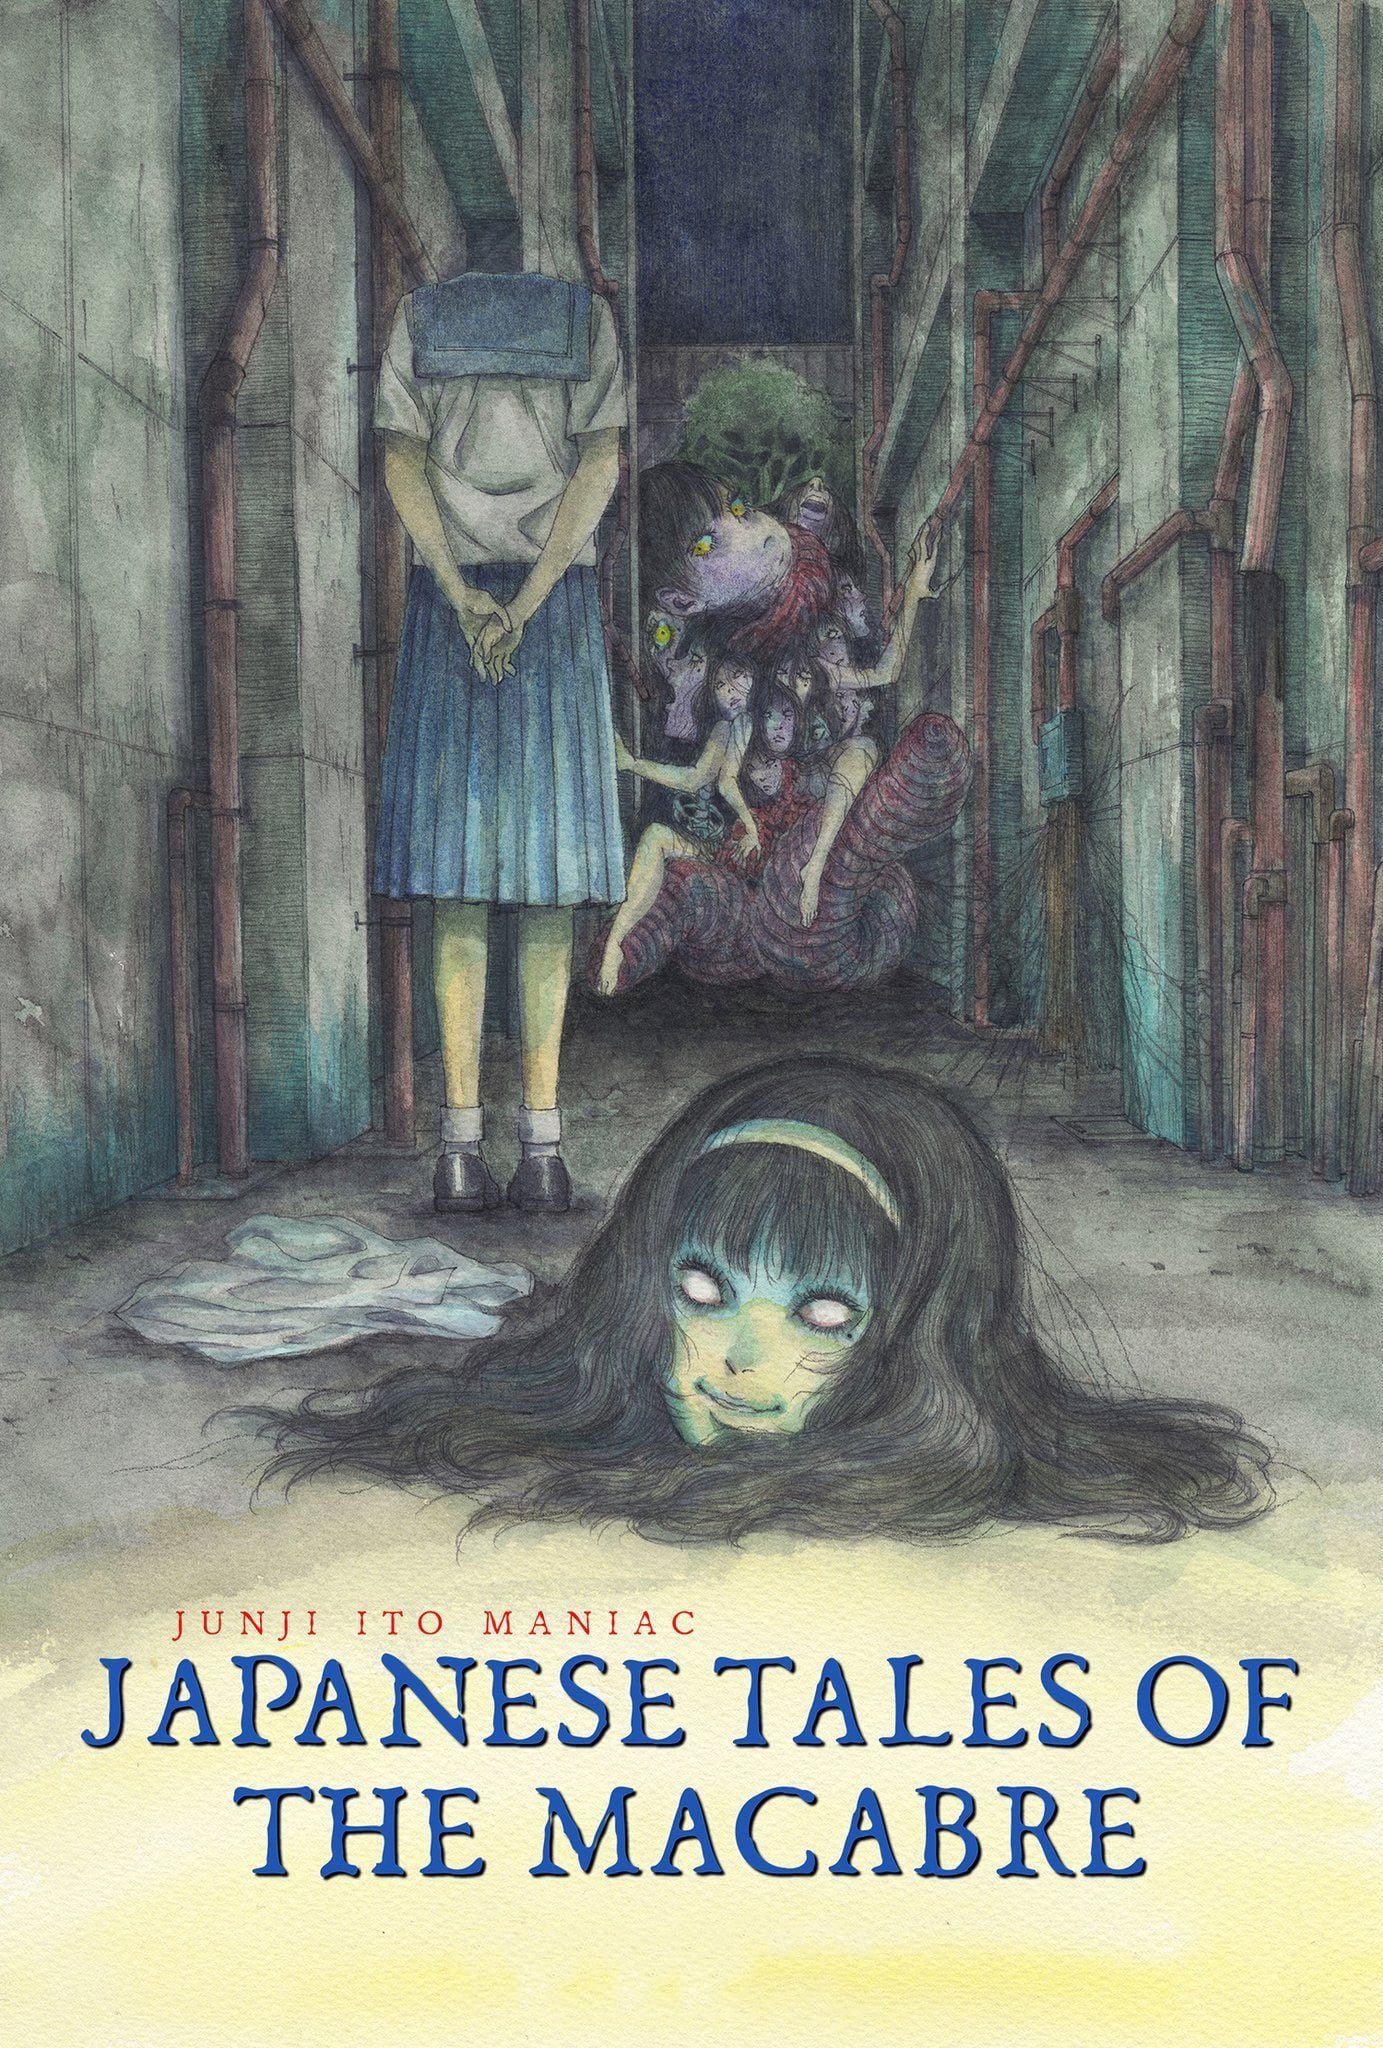 Junji Ito Maniac: Relatos japoneses de lo macabro